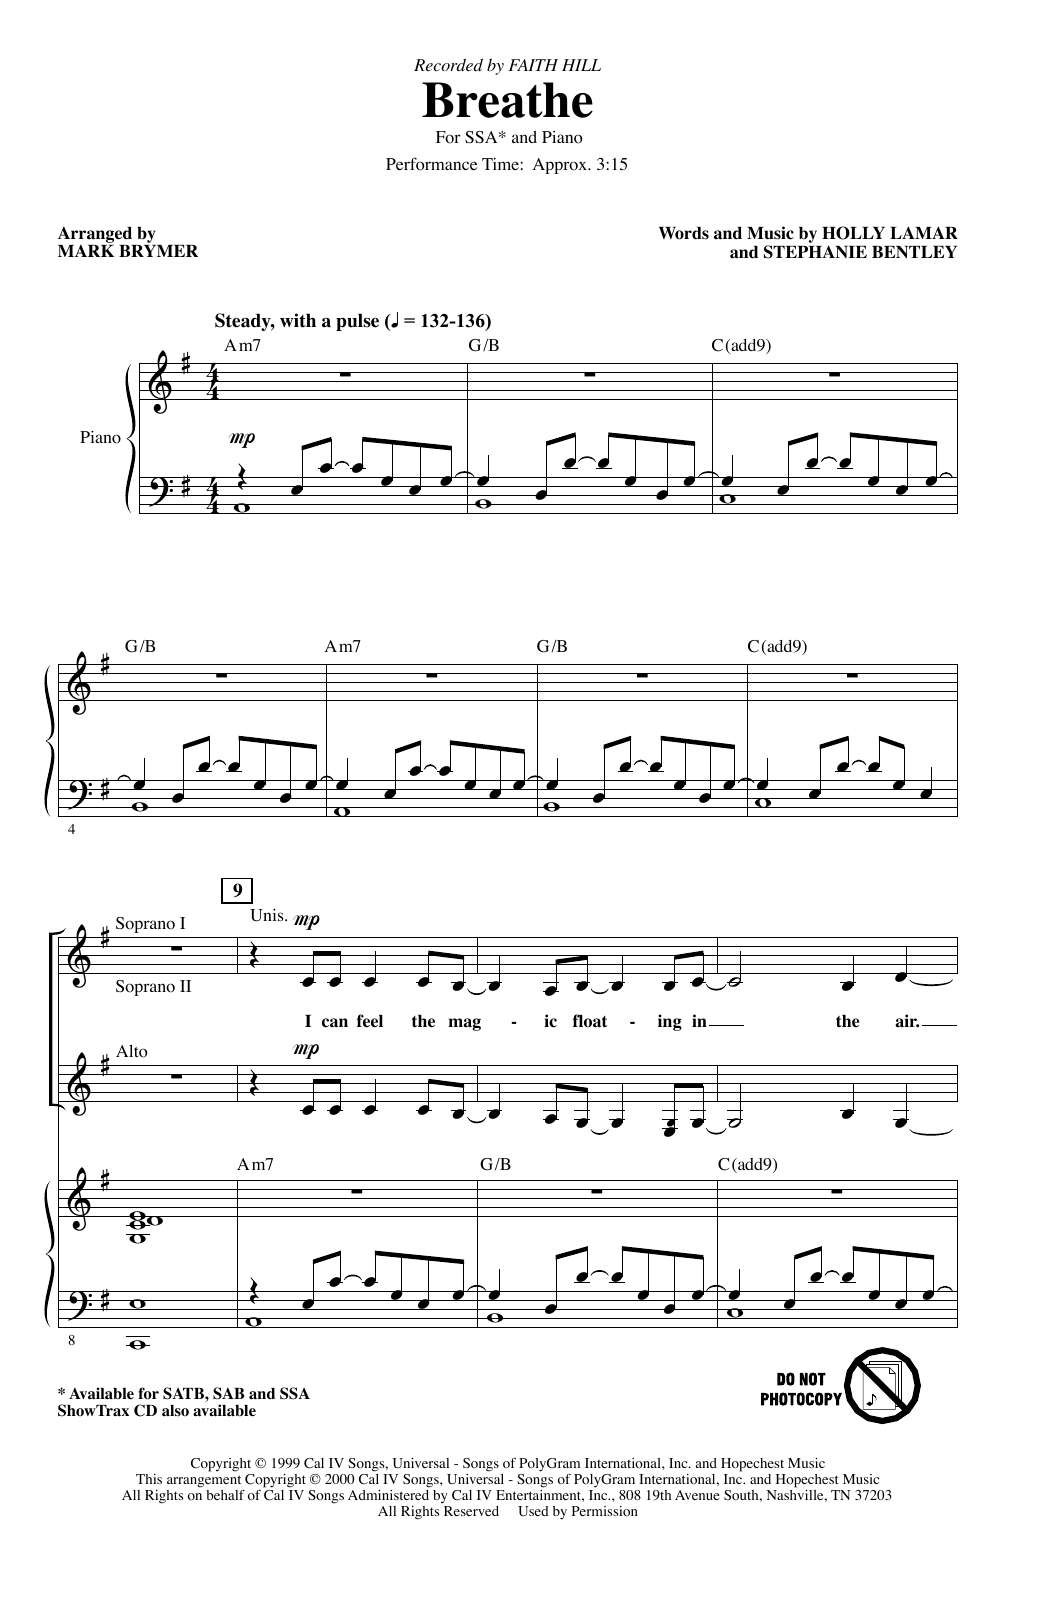 Faith Hill Breathe (arr. Mark Brymer) Sheet Music Notes & Chords for SAB Choir - Download or Print PDF